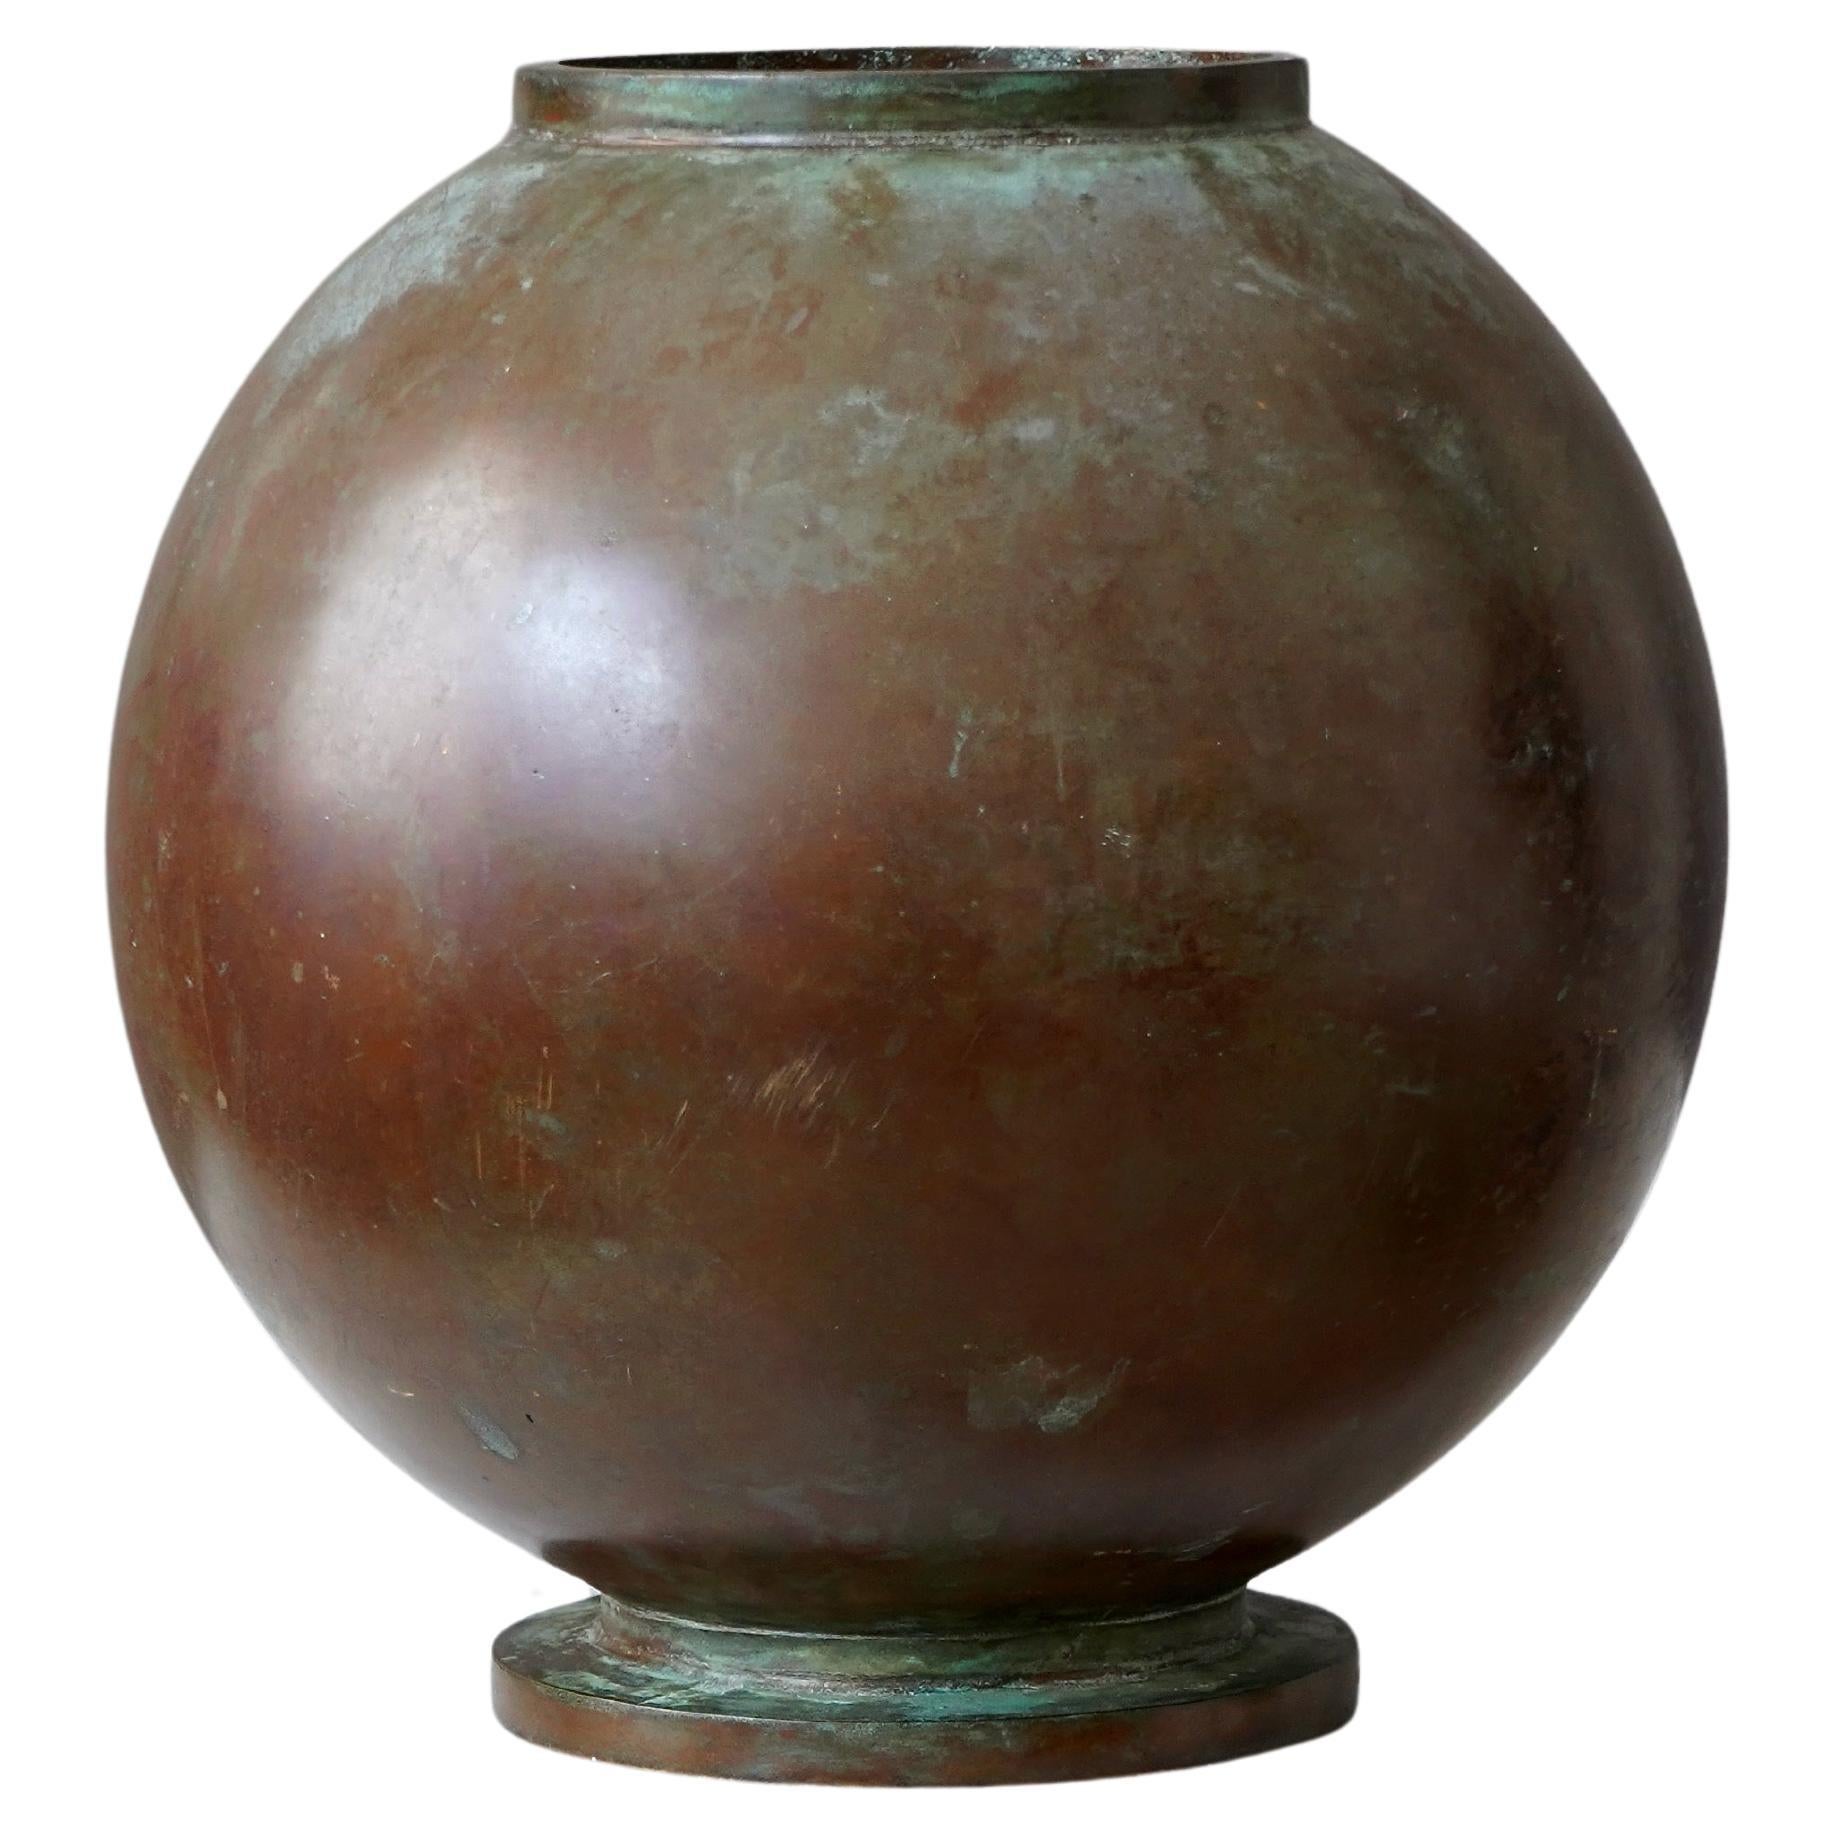 Vase Art déco en bronze de Sune Bäckström, Suède, années 1920